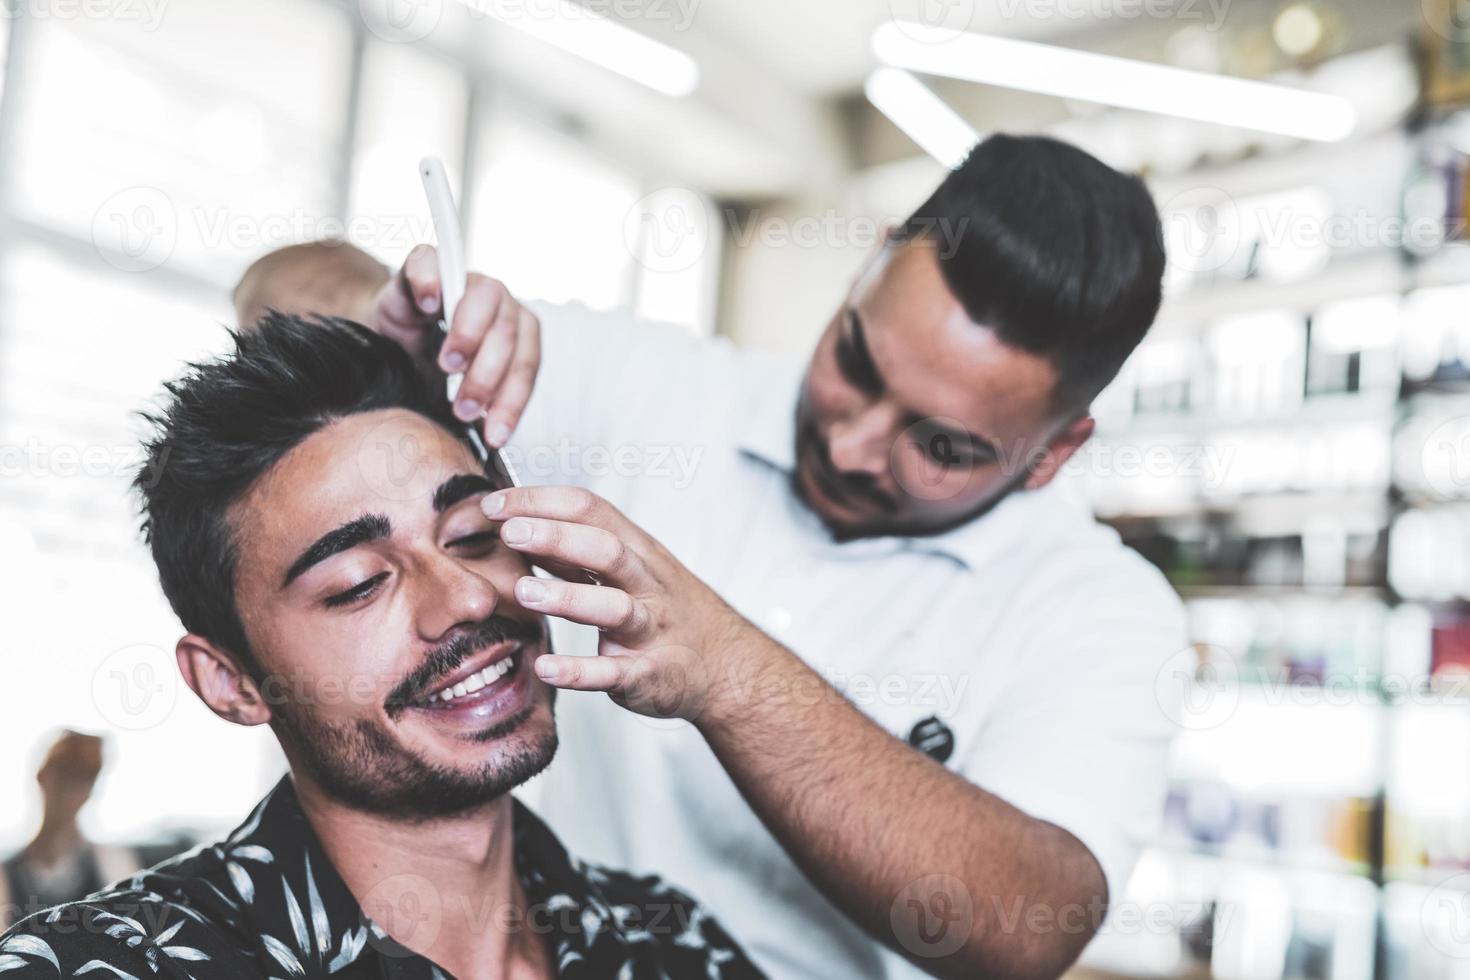 bel homme arabe se fait raser par le coiffeur au salon de coiffure photo